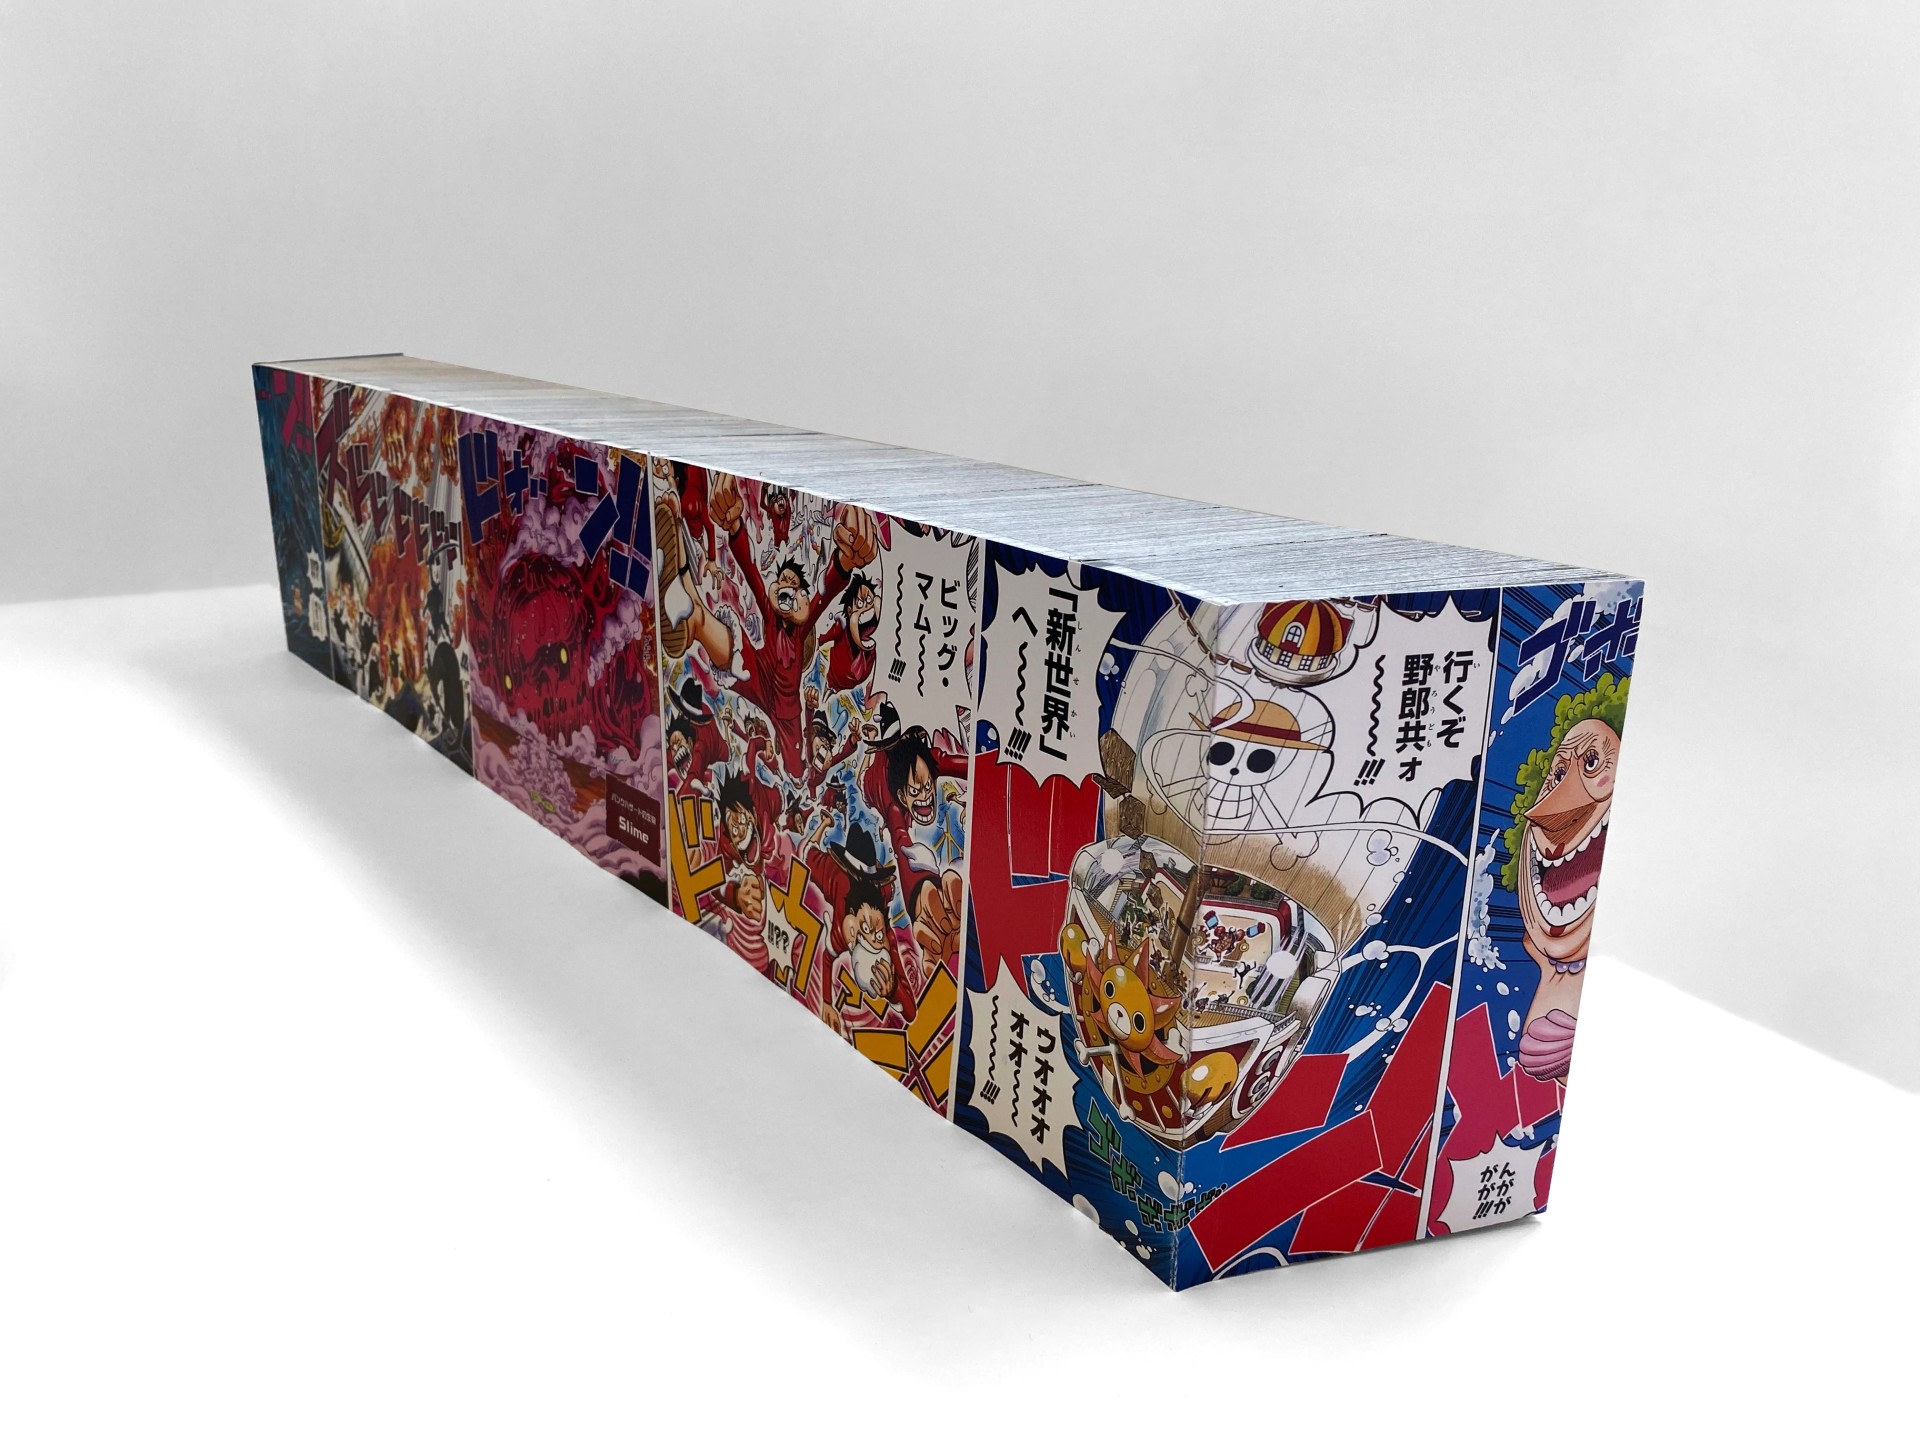 The Guardian รายงาน ‘One Piece’ ฉบับพิเศษความยาวมากที่สุดถึง 21,540 หน้า เป็นการตีพิมพ์ที่ผิดลิขสิทธิ์